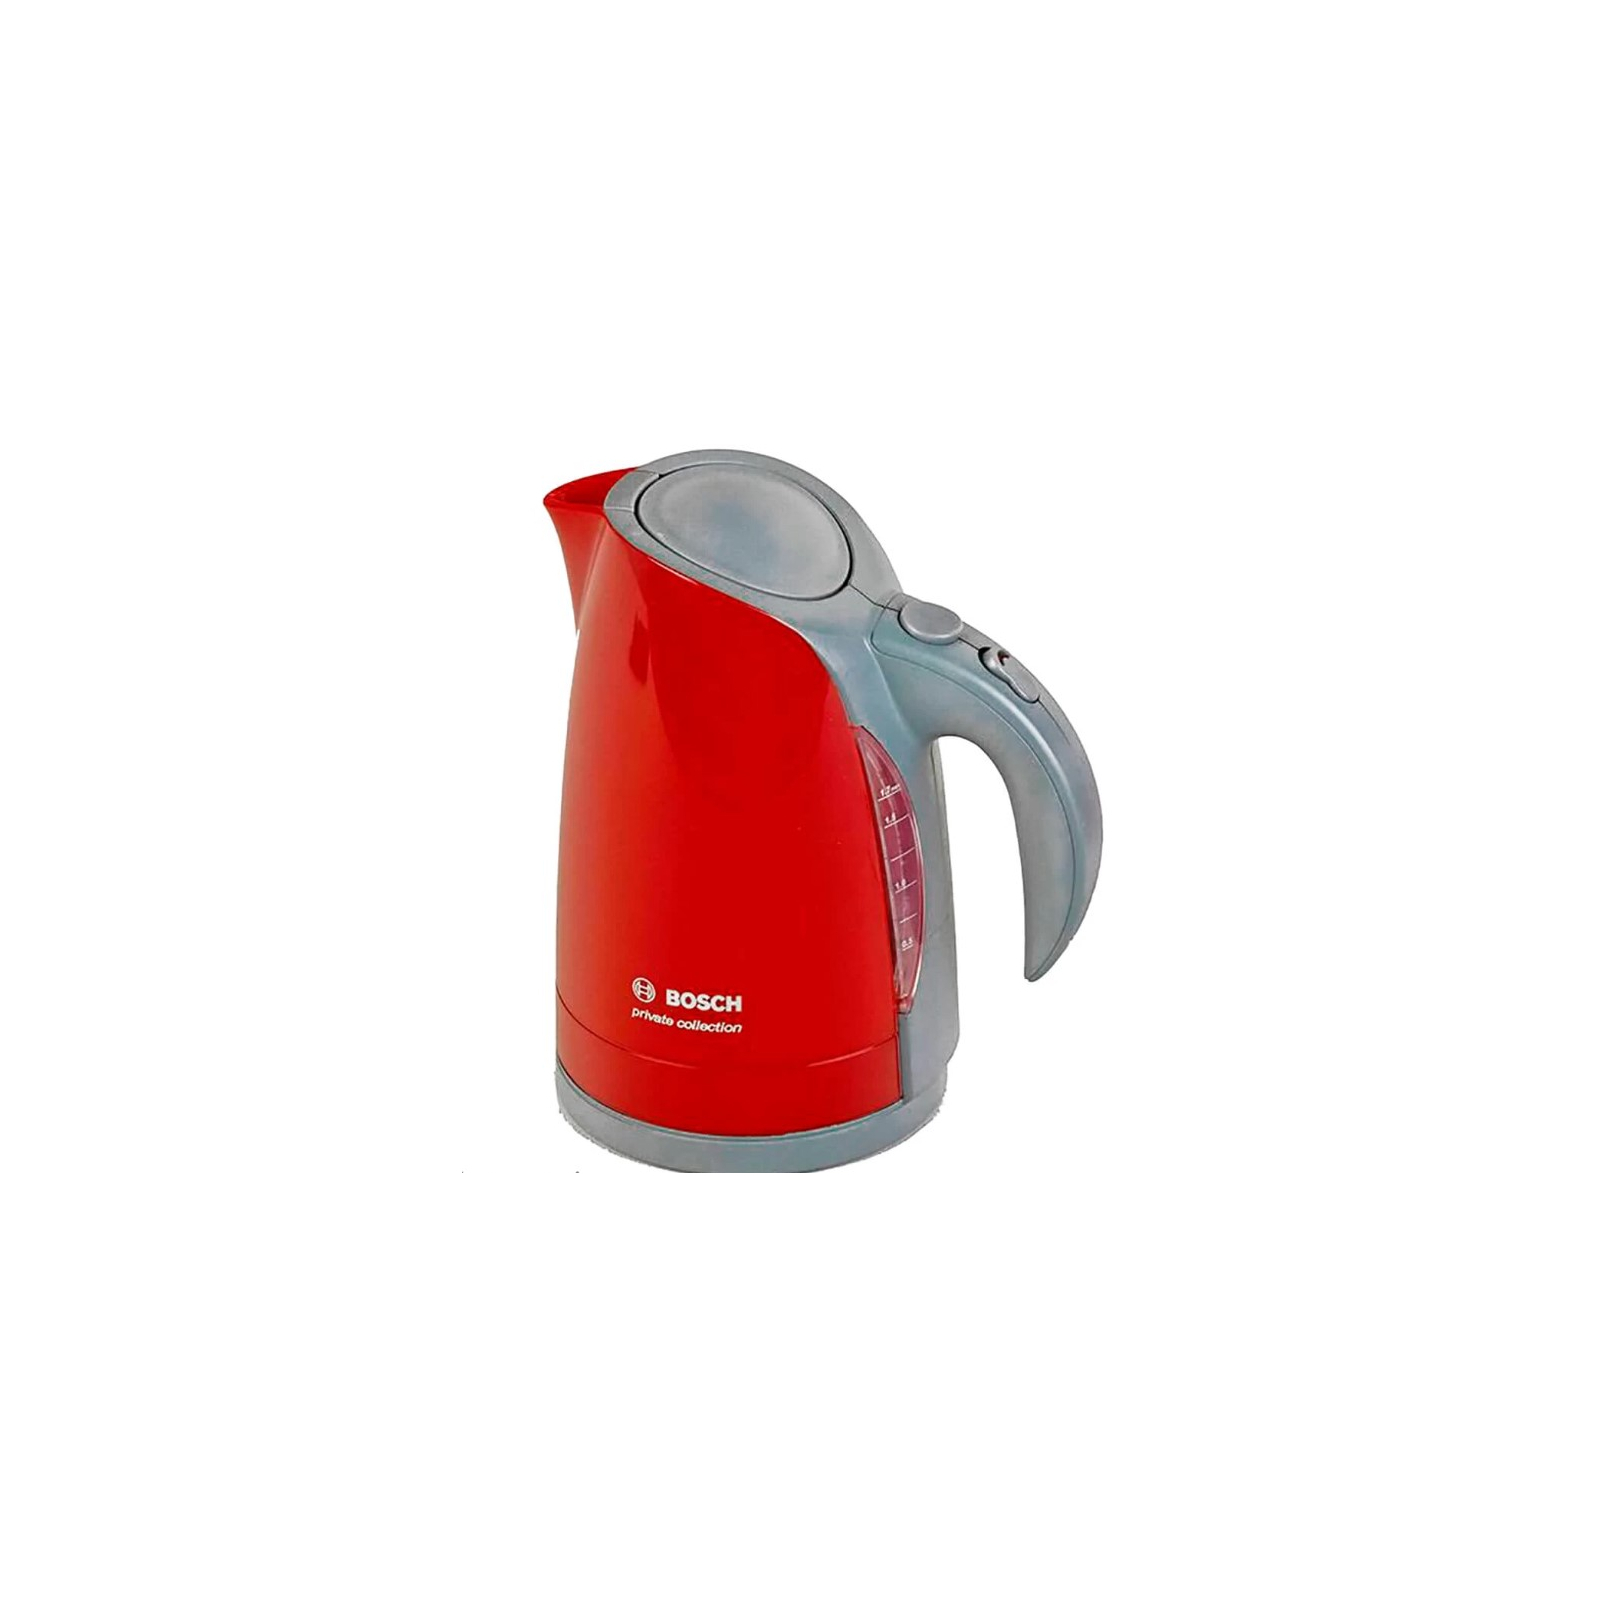 Игровой набор Bosch Чайник, красно-серый (9548)